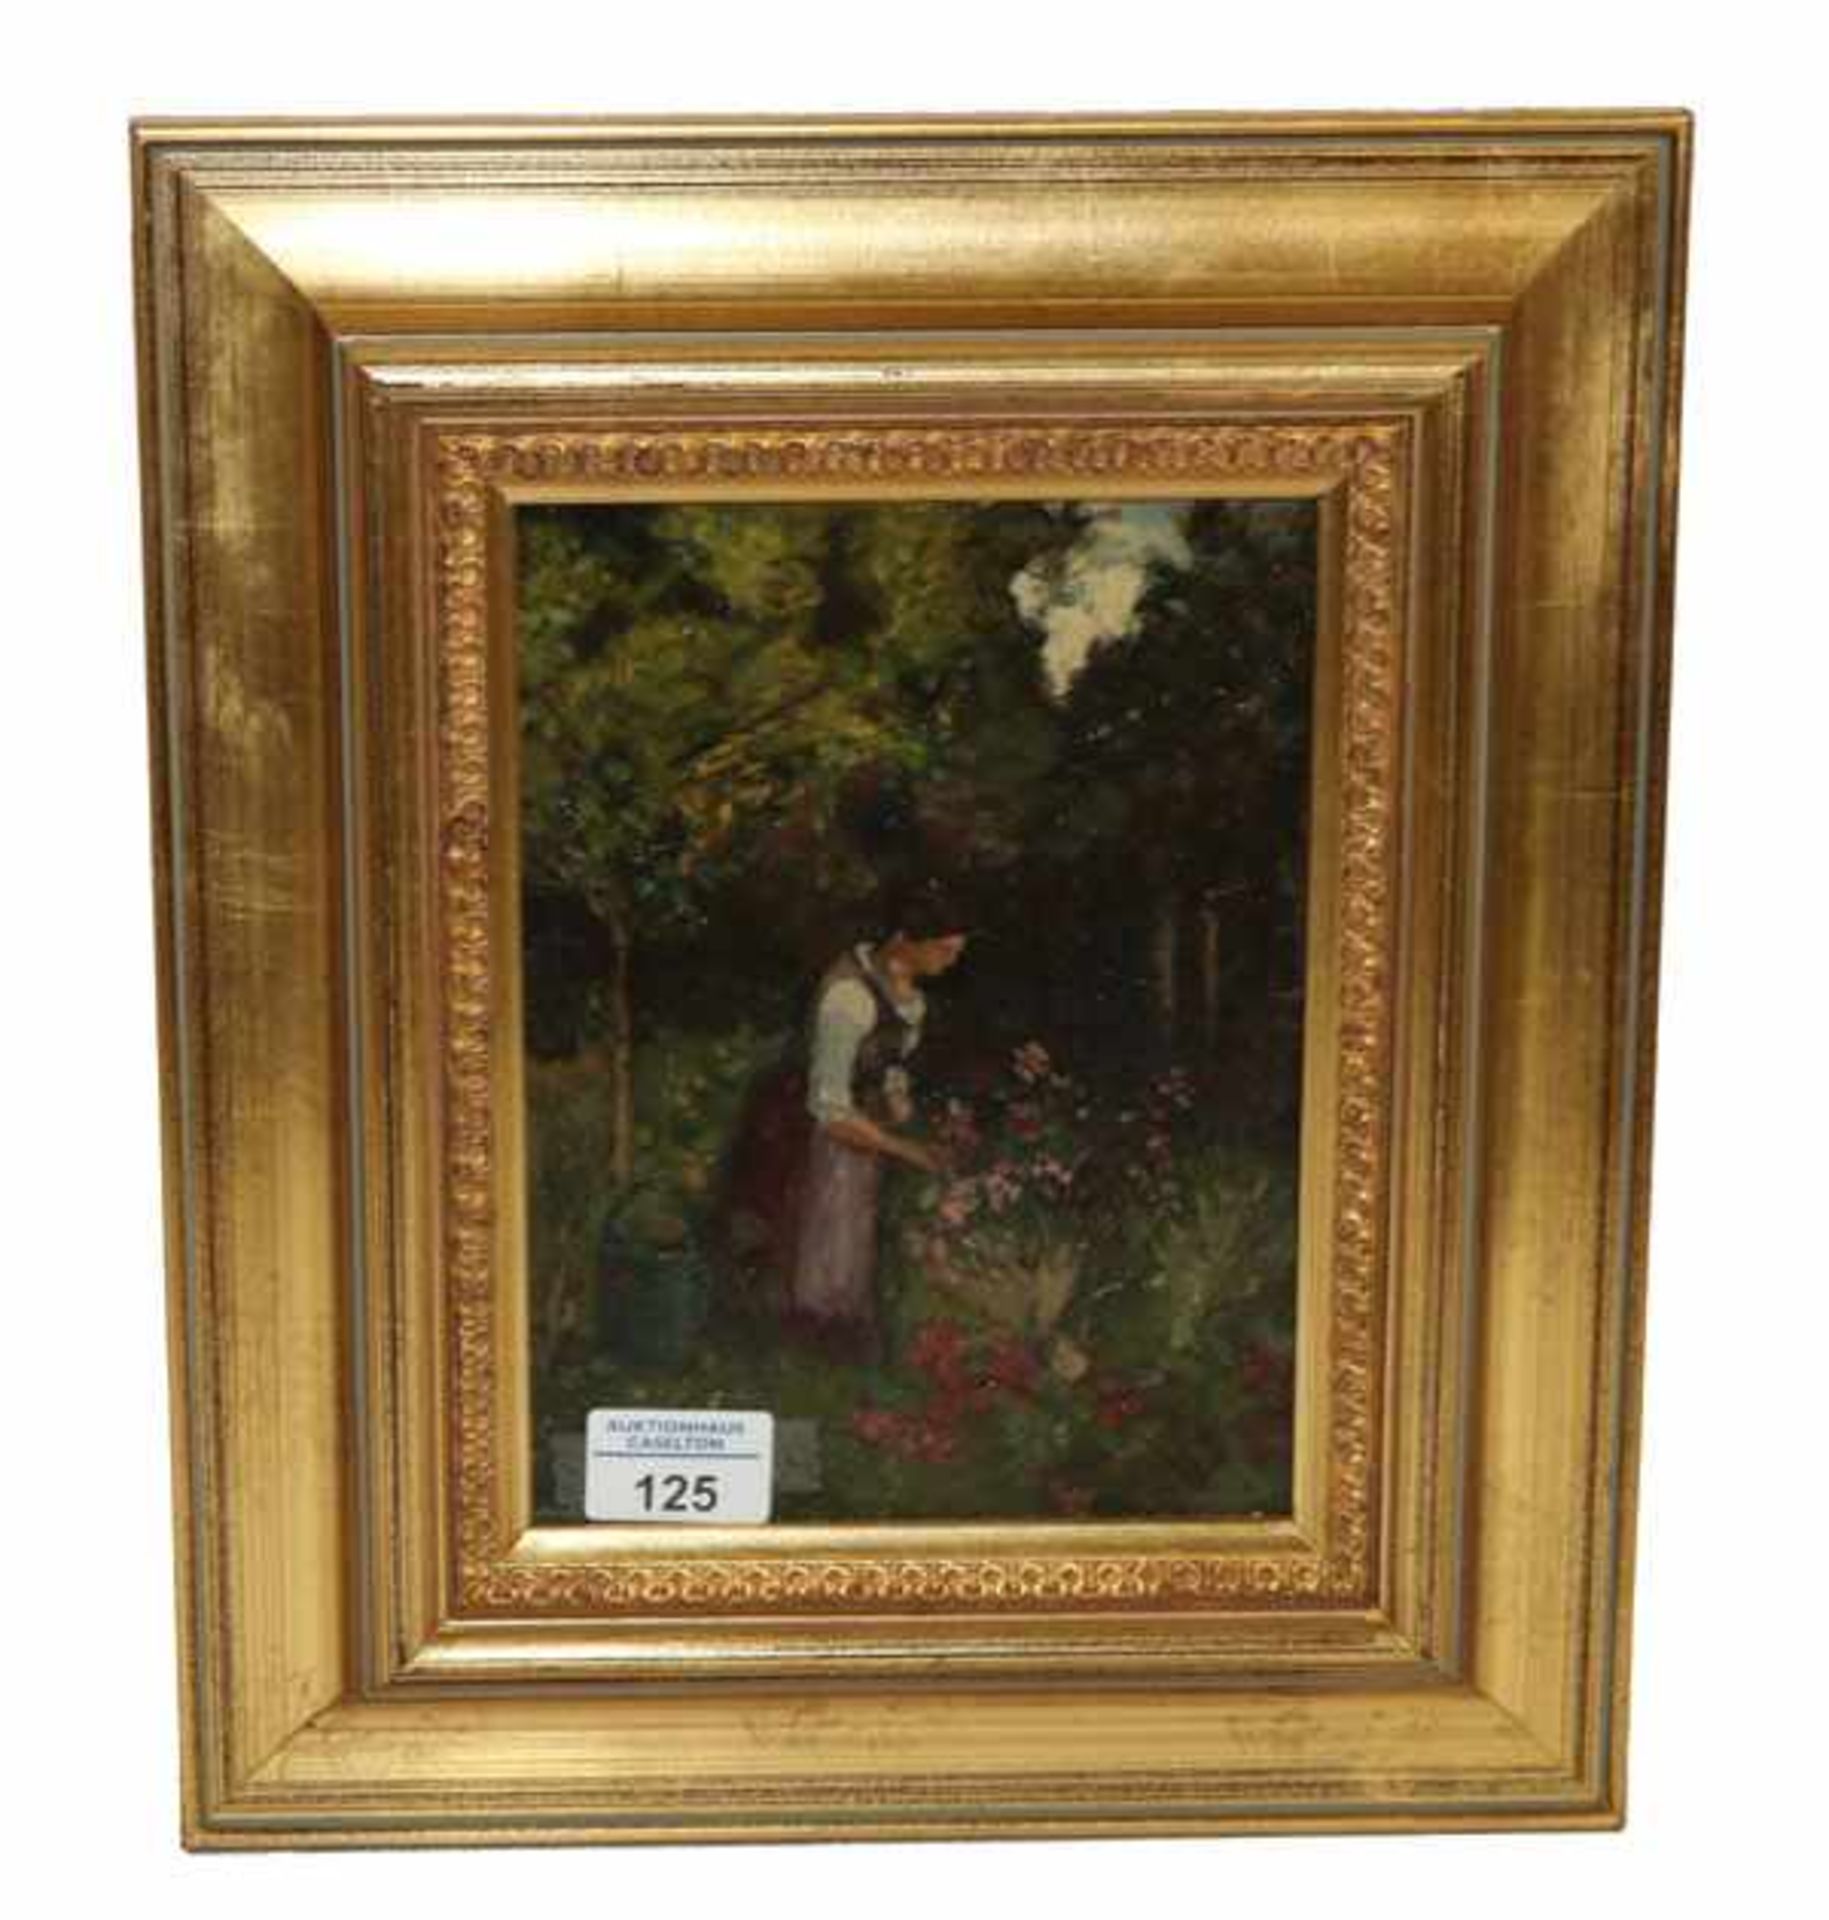 Gemälde ÖL/Malkarton 'Im Rosengarten', rückseitig vom Künstler bezeichnet H. Deuchert, * 1840